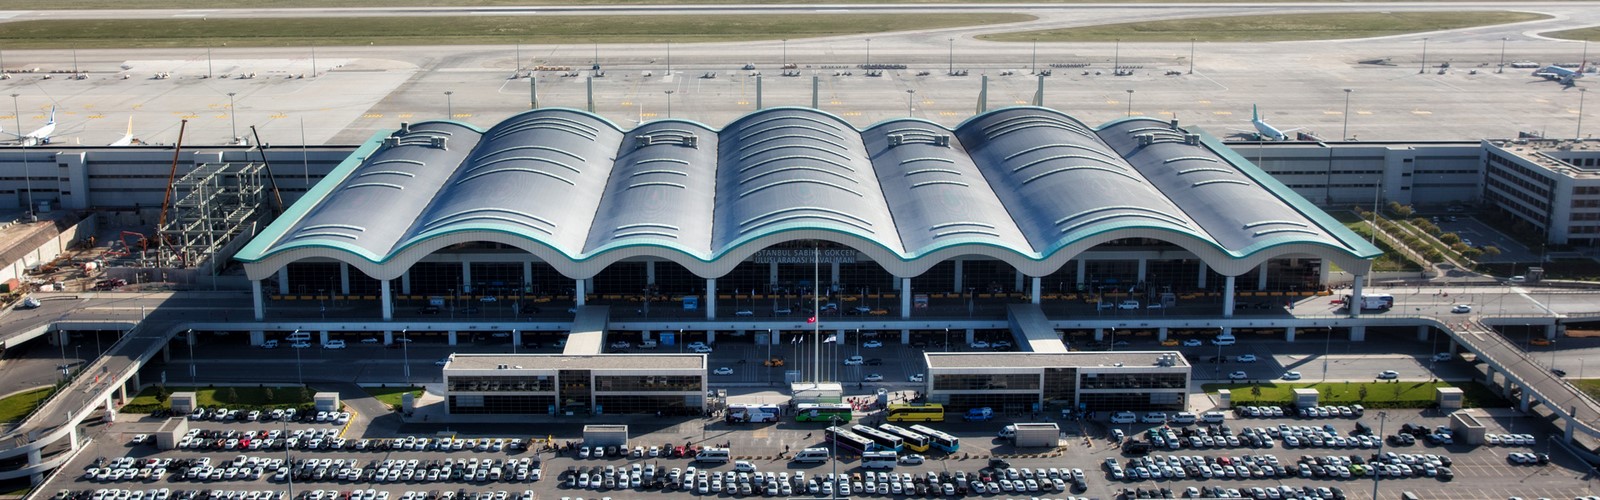 Sabiha Gökçen International Airport, Turkey - Sheet3